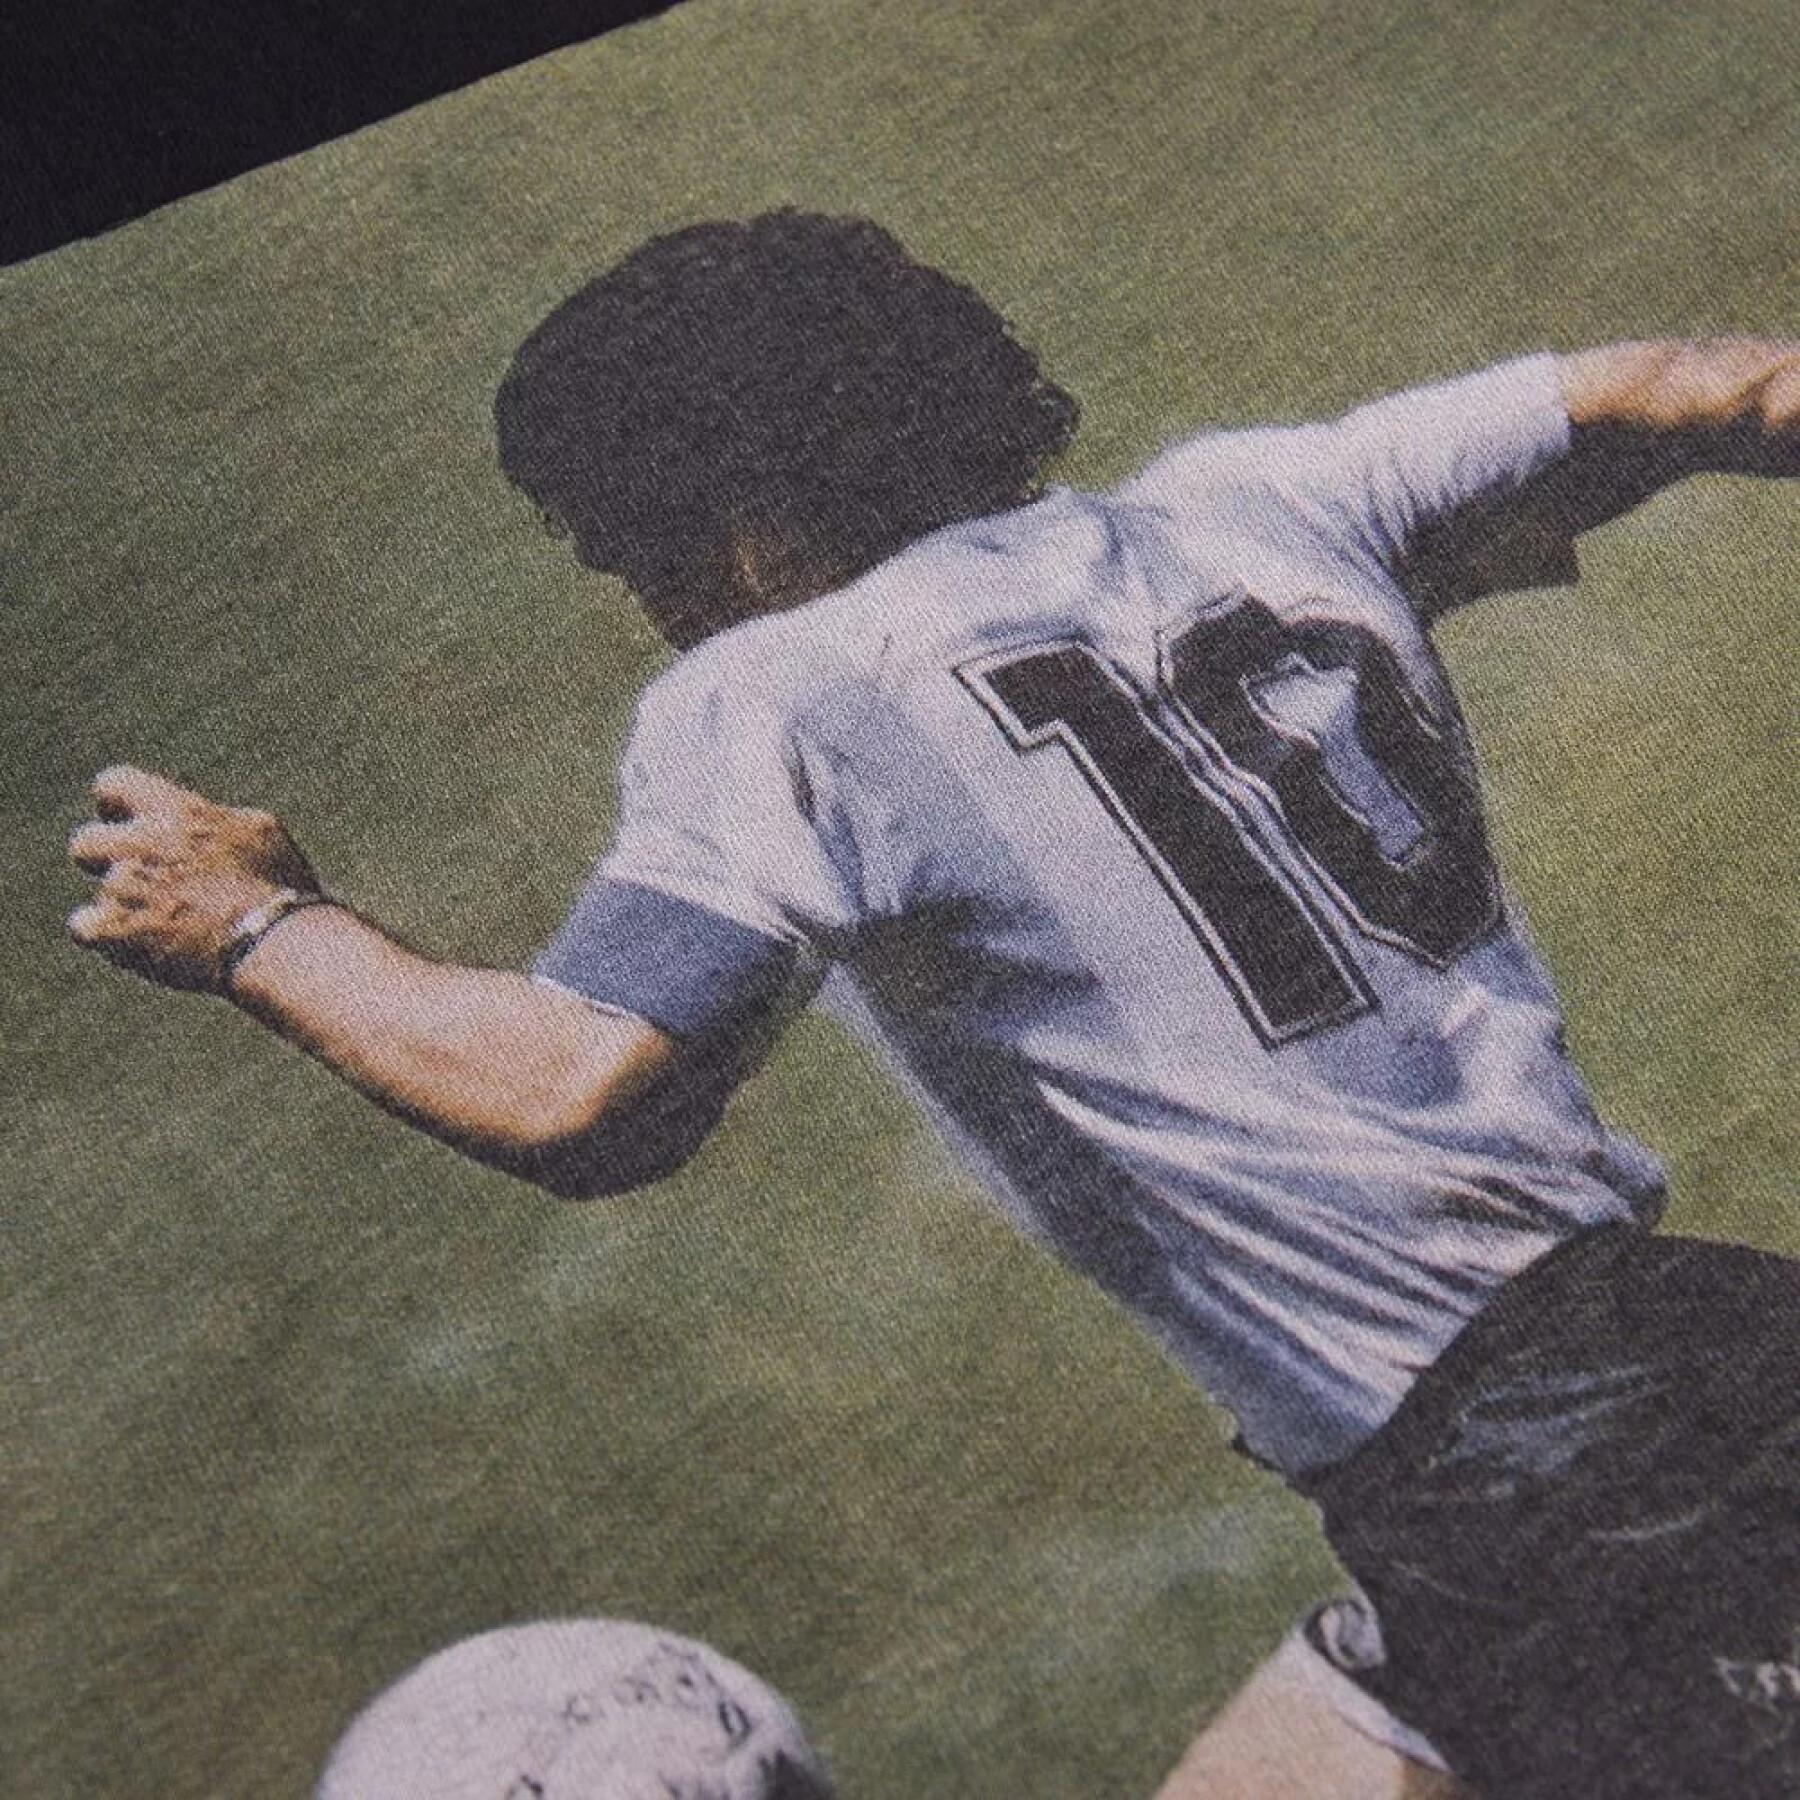 Koszulka Copa Football Maradona World Cup 1986